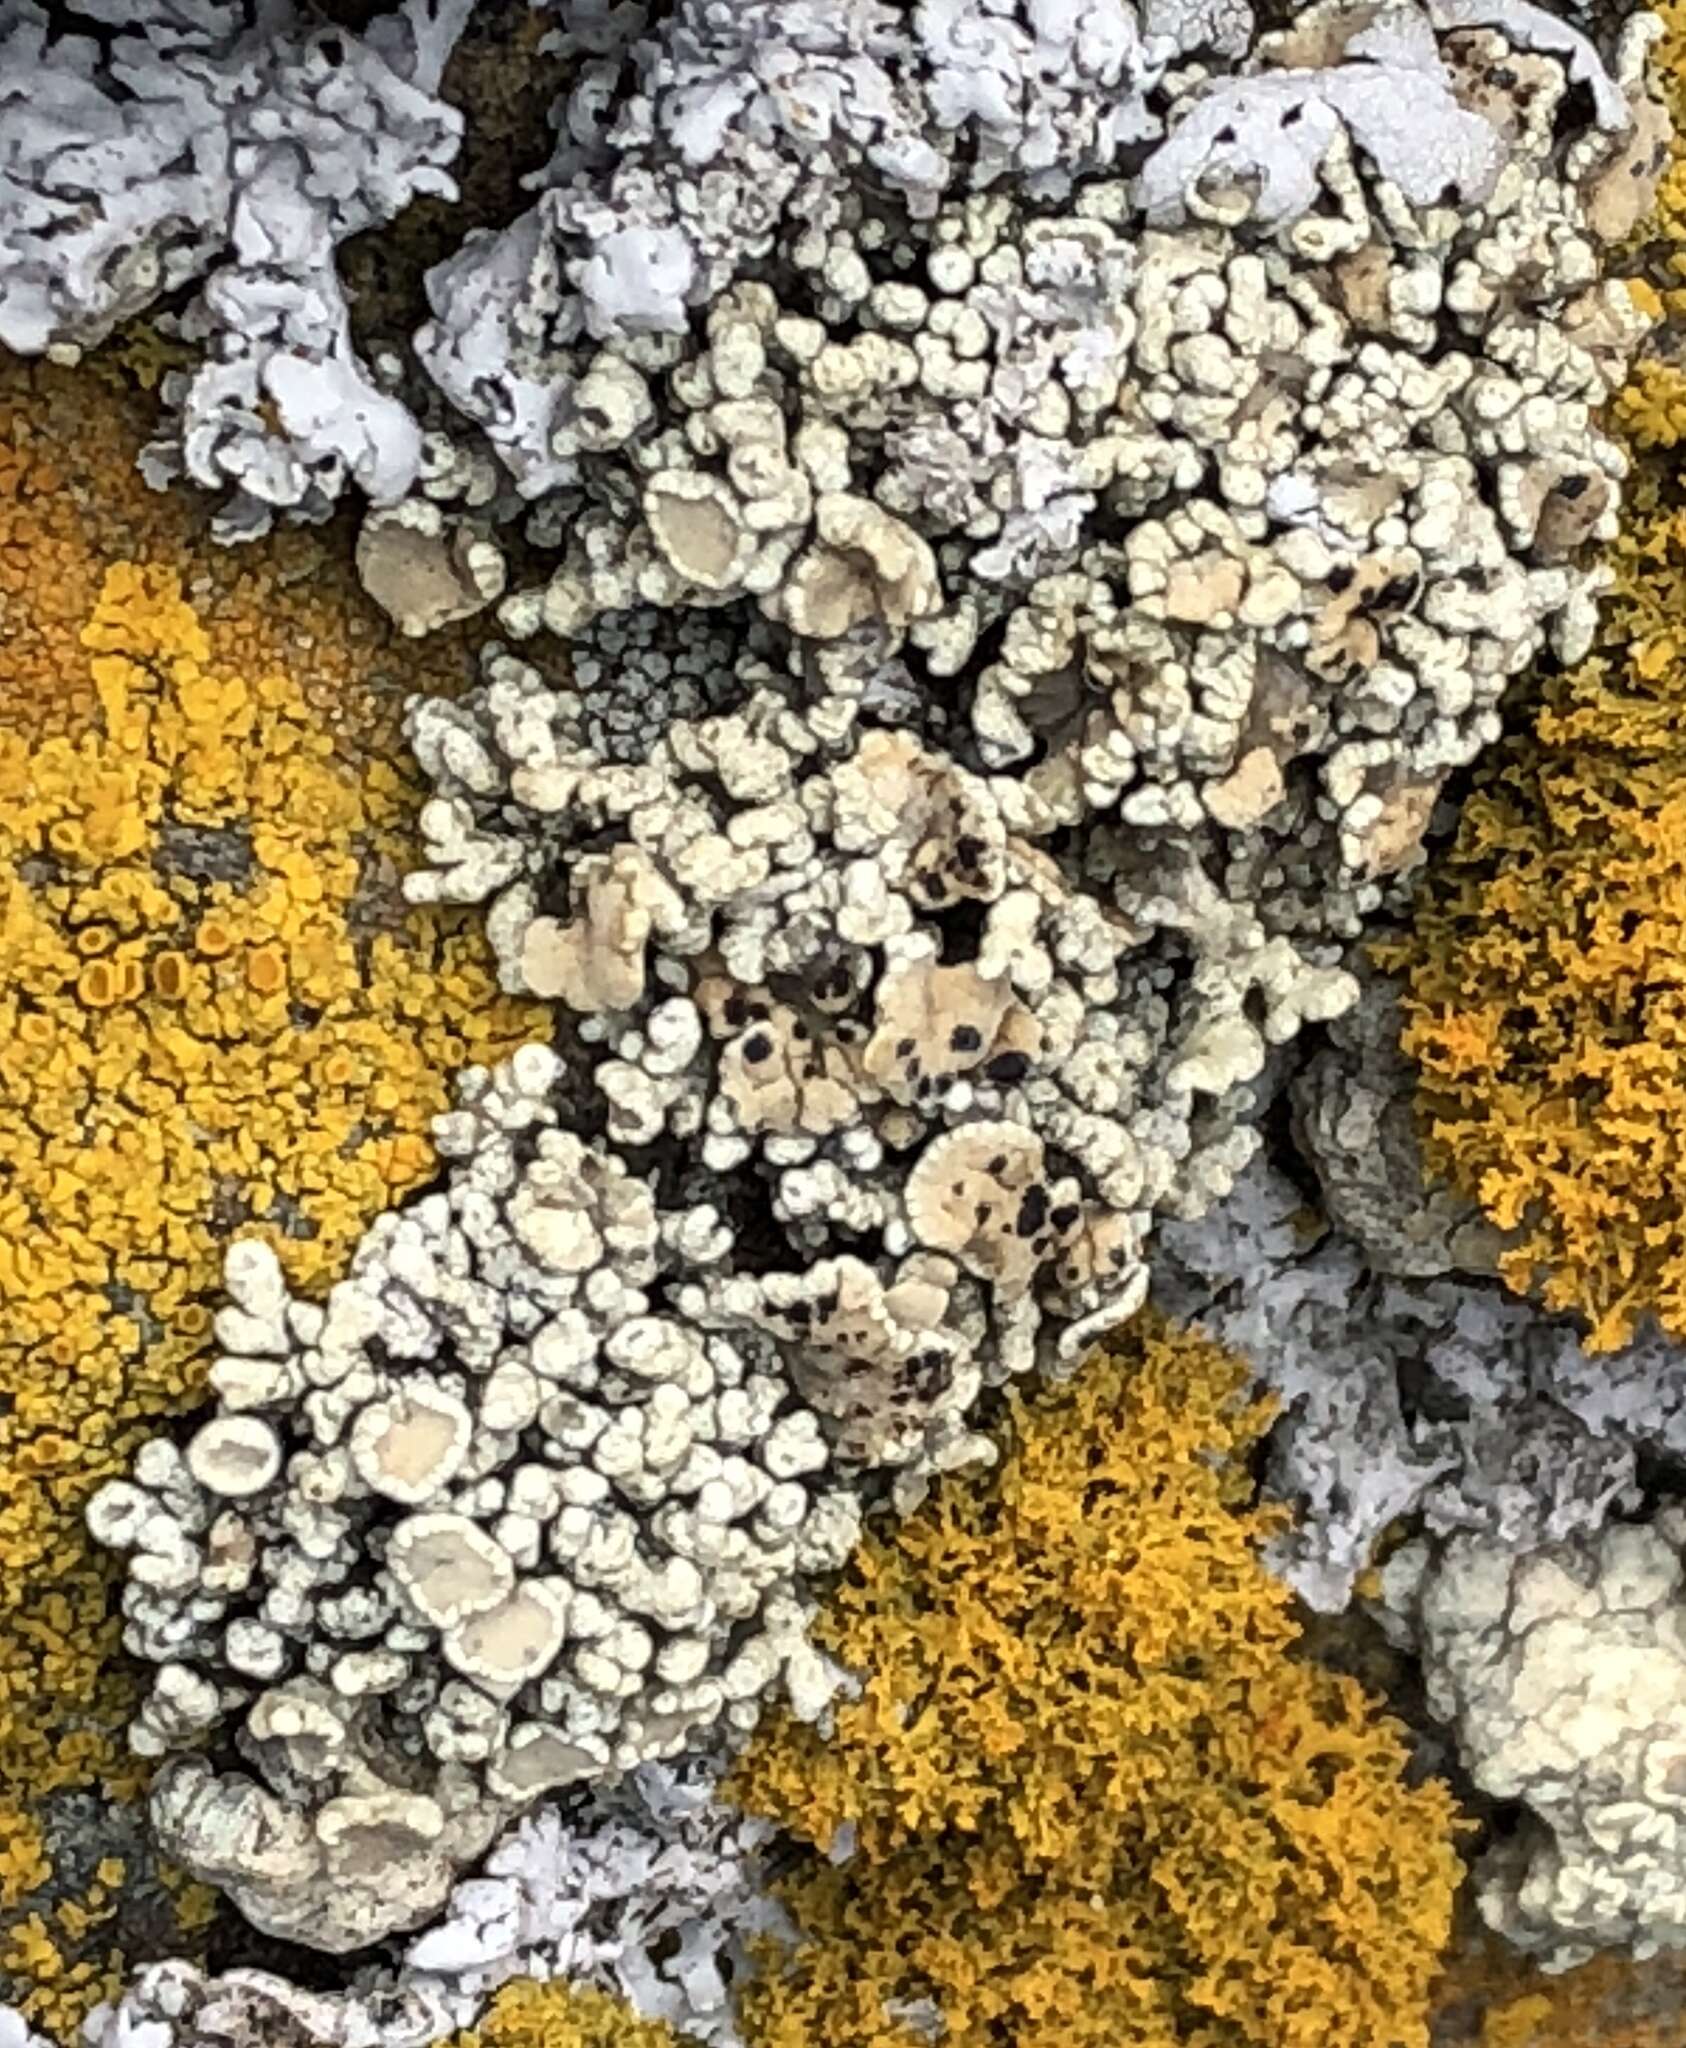 Image of Bolander's cladidium lichen